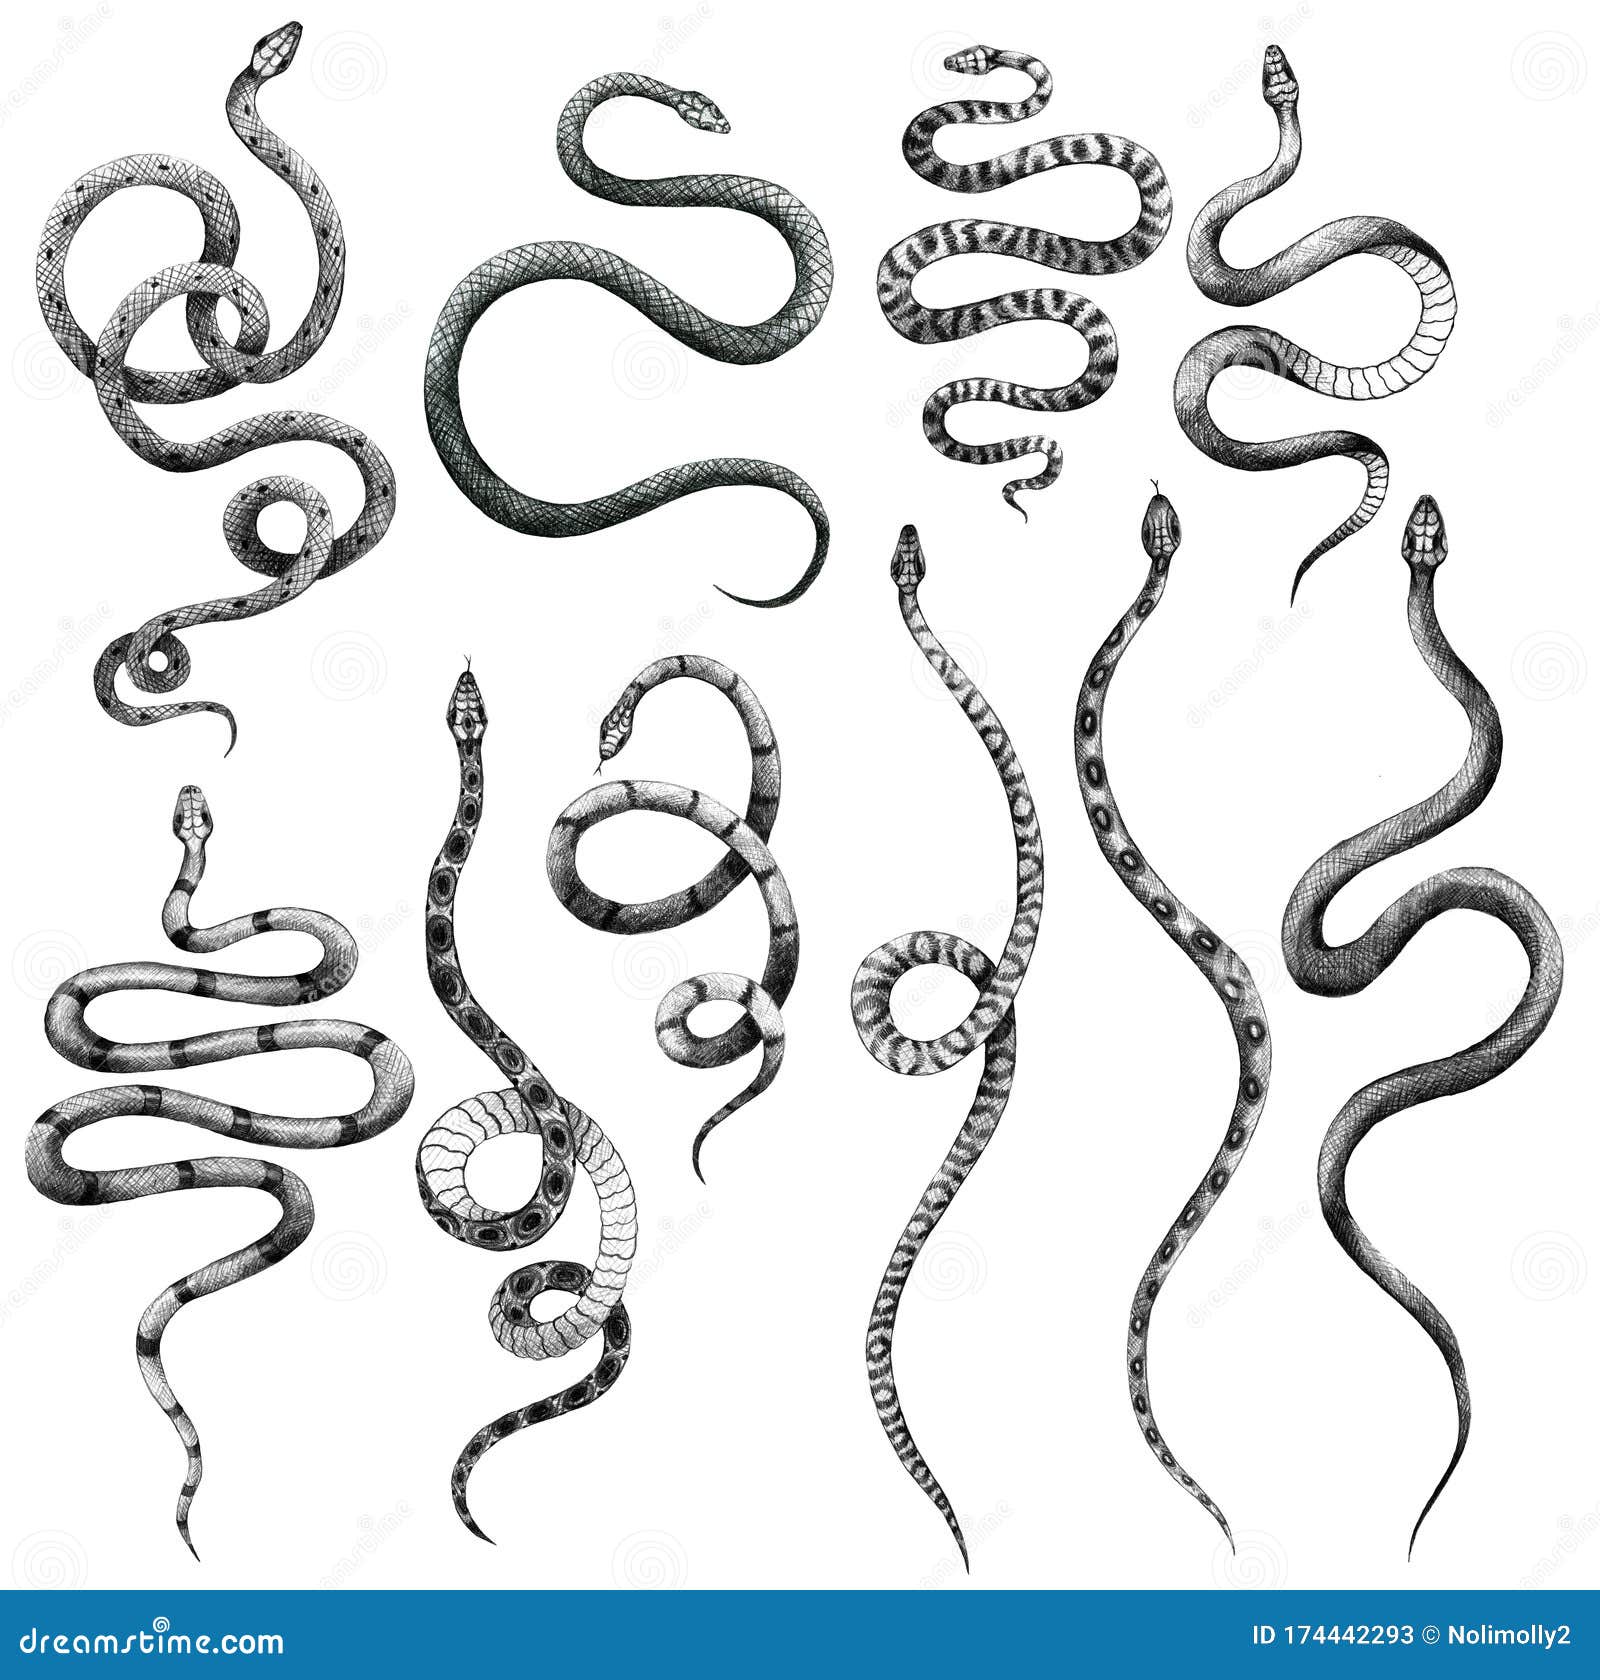 Conjunto De Diferentes Serpientes Lápiz Dibujo Vintage Estilo Gráfico  Blanco Y Negro Víbora Stock de ilustración - Ilustración de mano, serpientes:  174442293